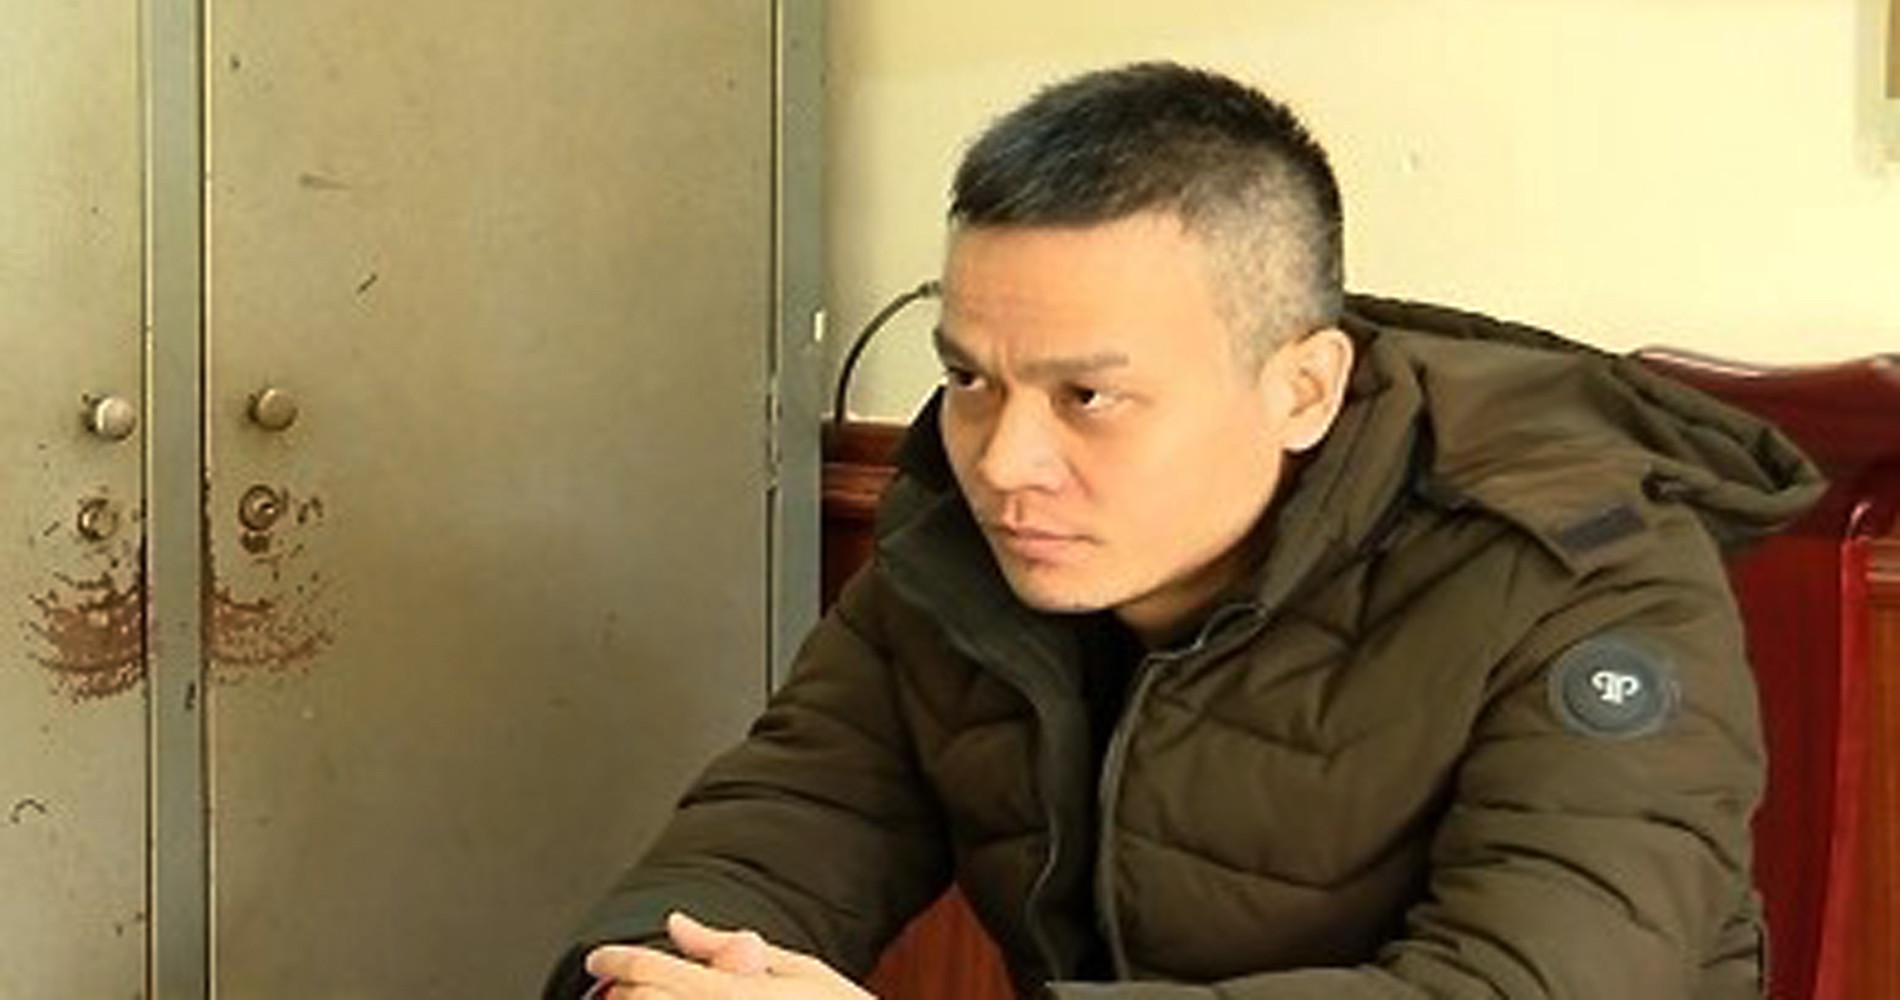 Phó Giám đốc Trung tâm đăng kiểm ở Ninh Bình bị bắt vì nhận hối lộ